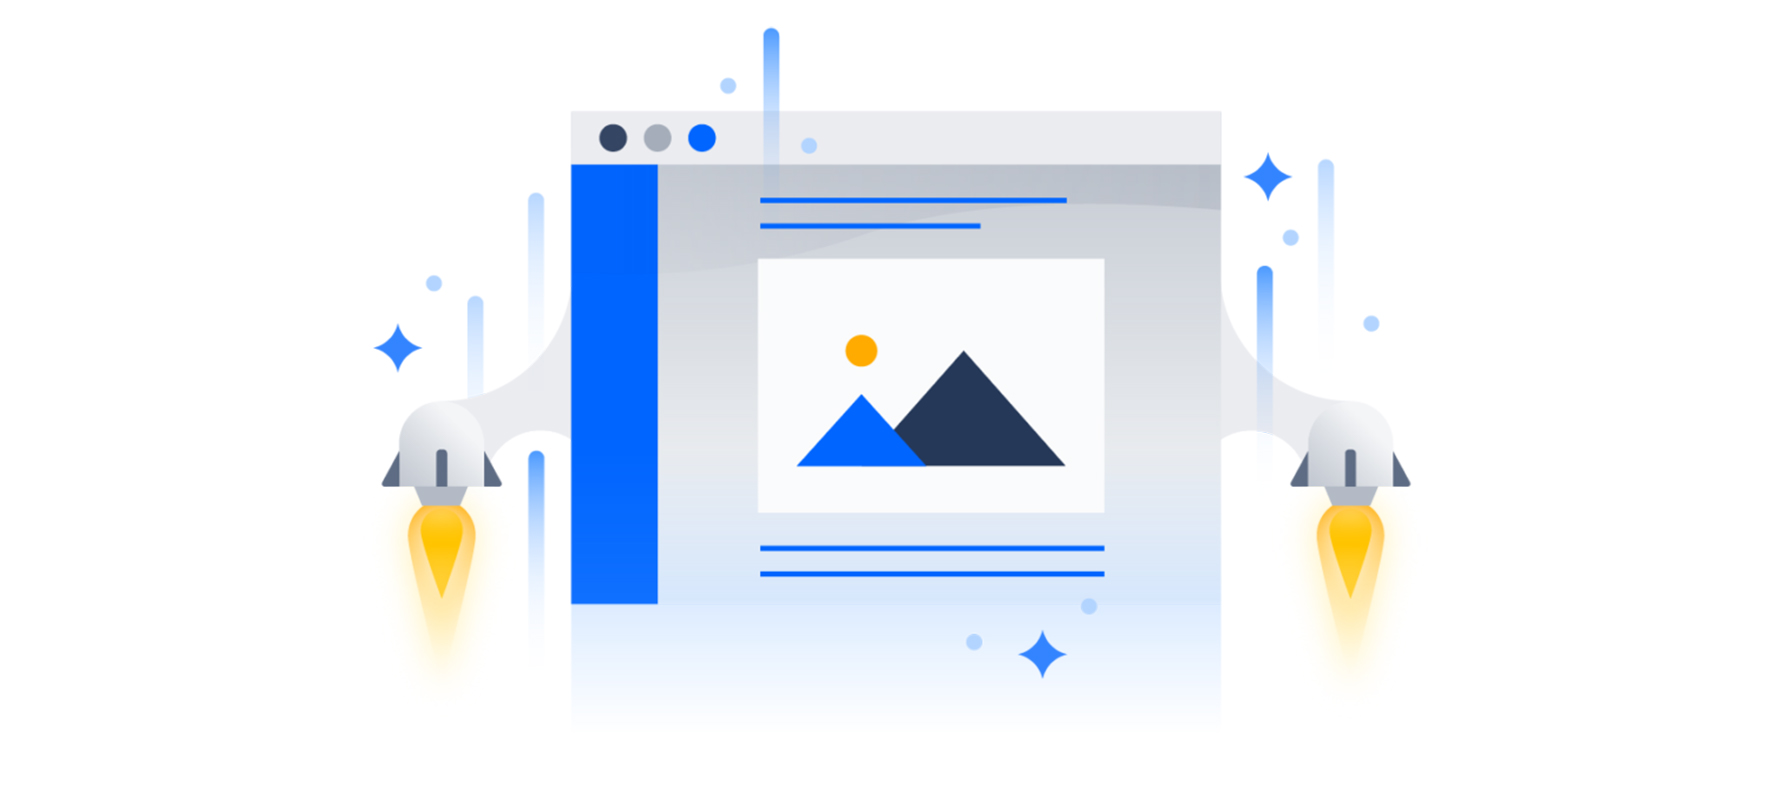 Atlassian-Werbebild, das Confluence 7.0 mit zwei Raketentriebwerken andeutet.